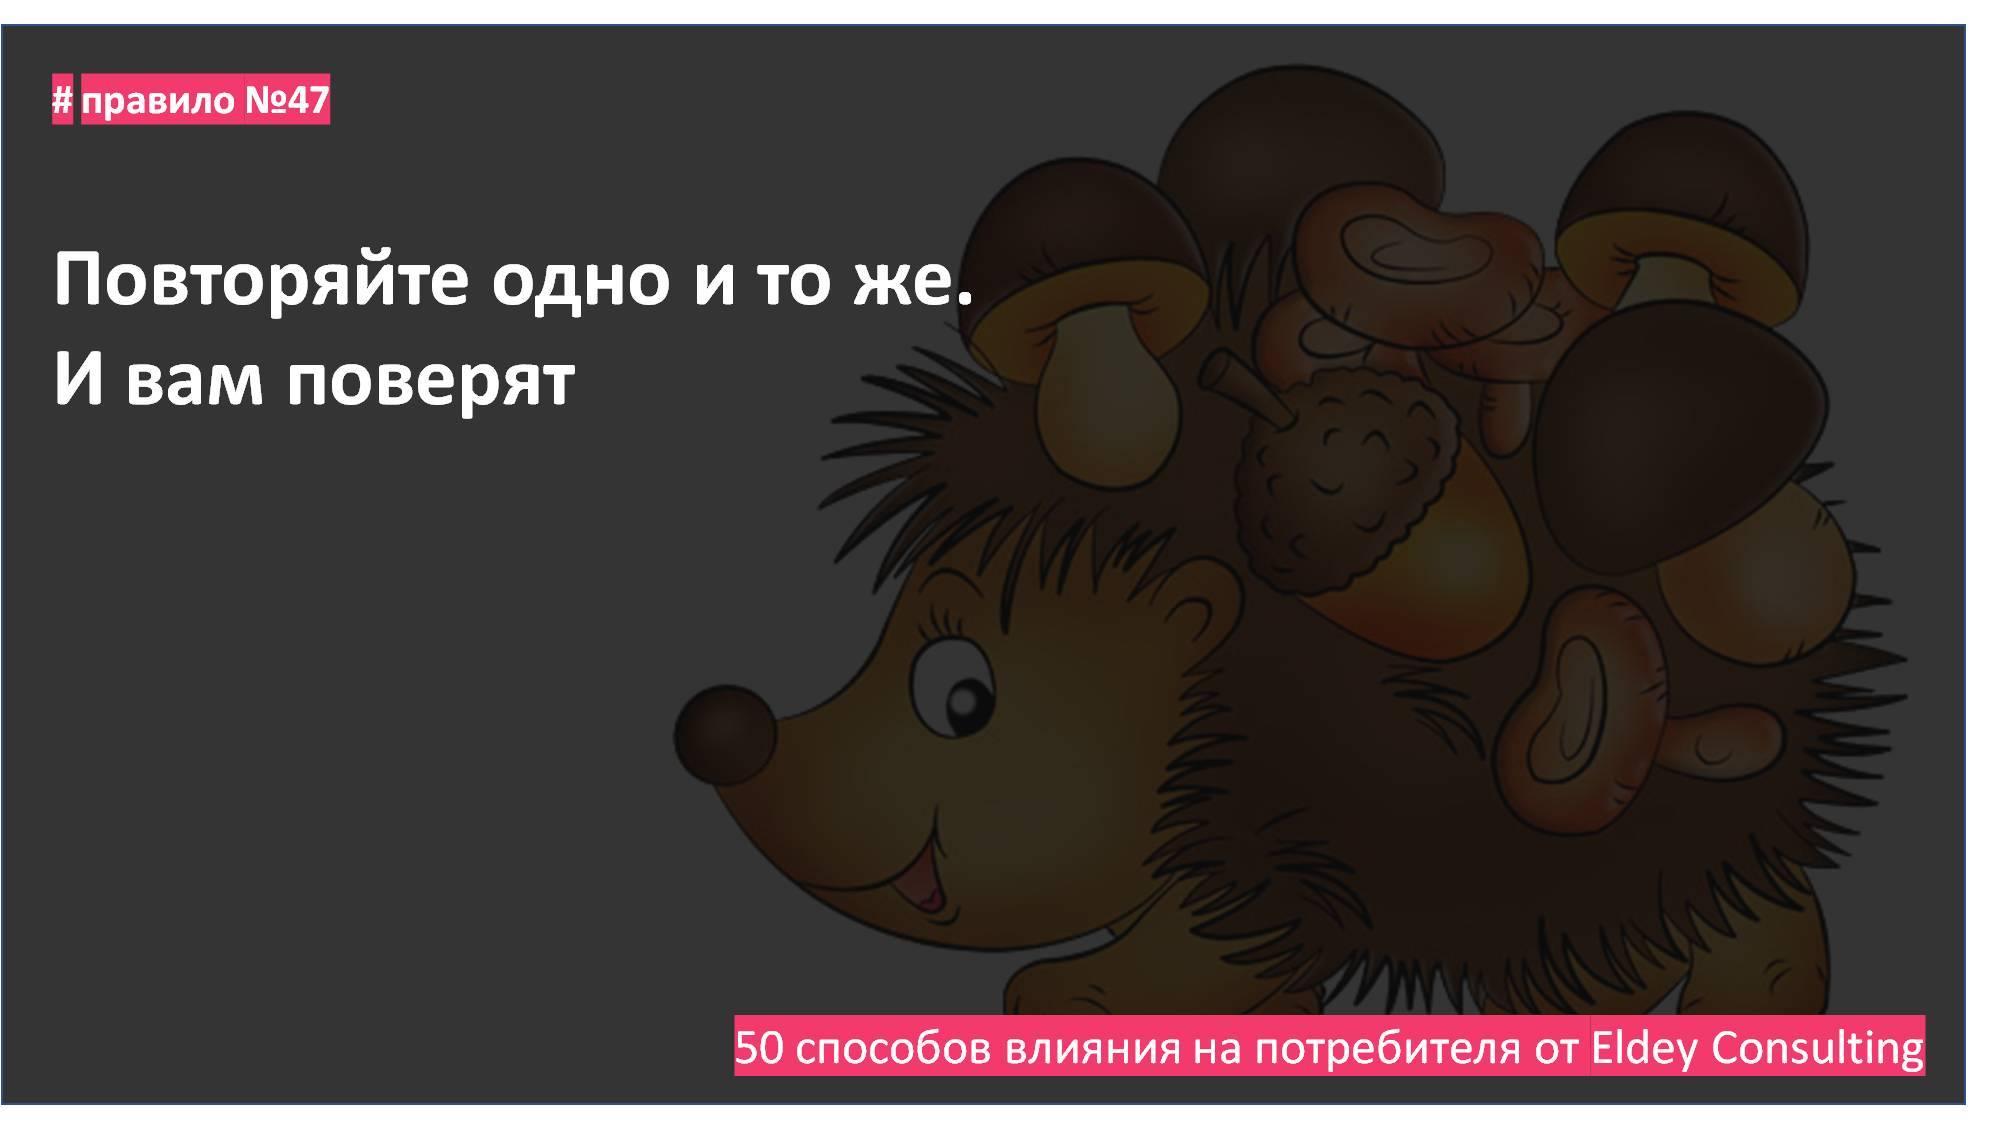 психология маркетинга - поведение потребителей Eldey Consulting eldey.ru